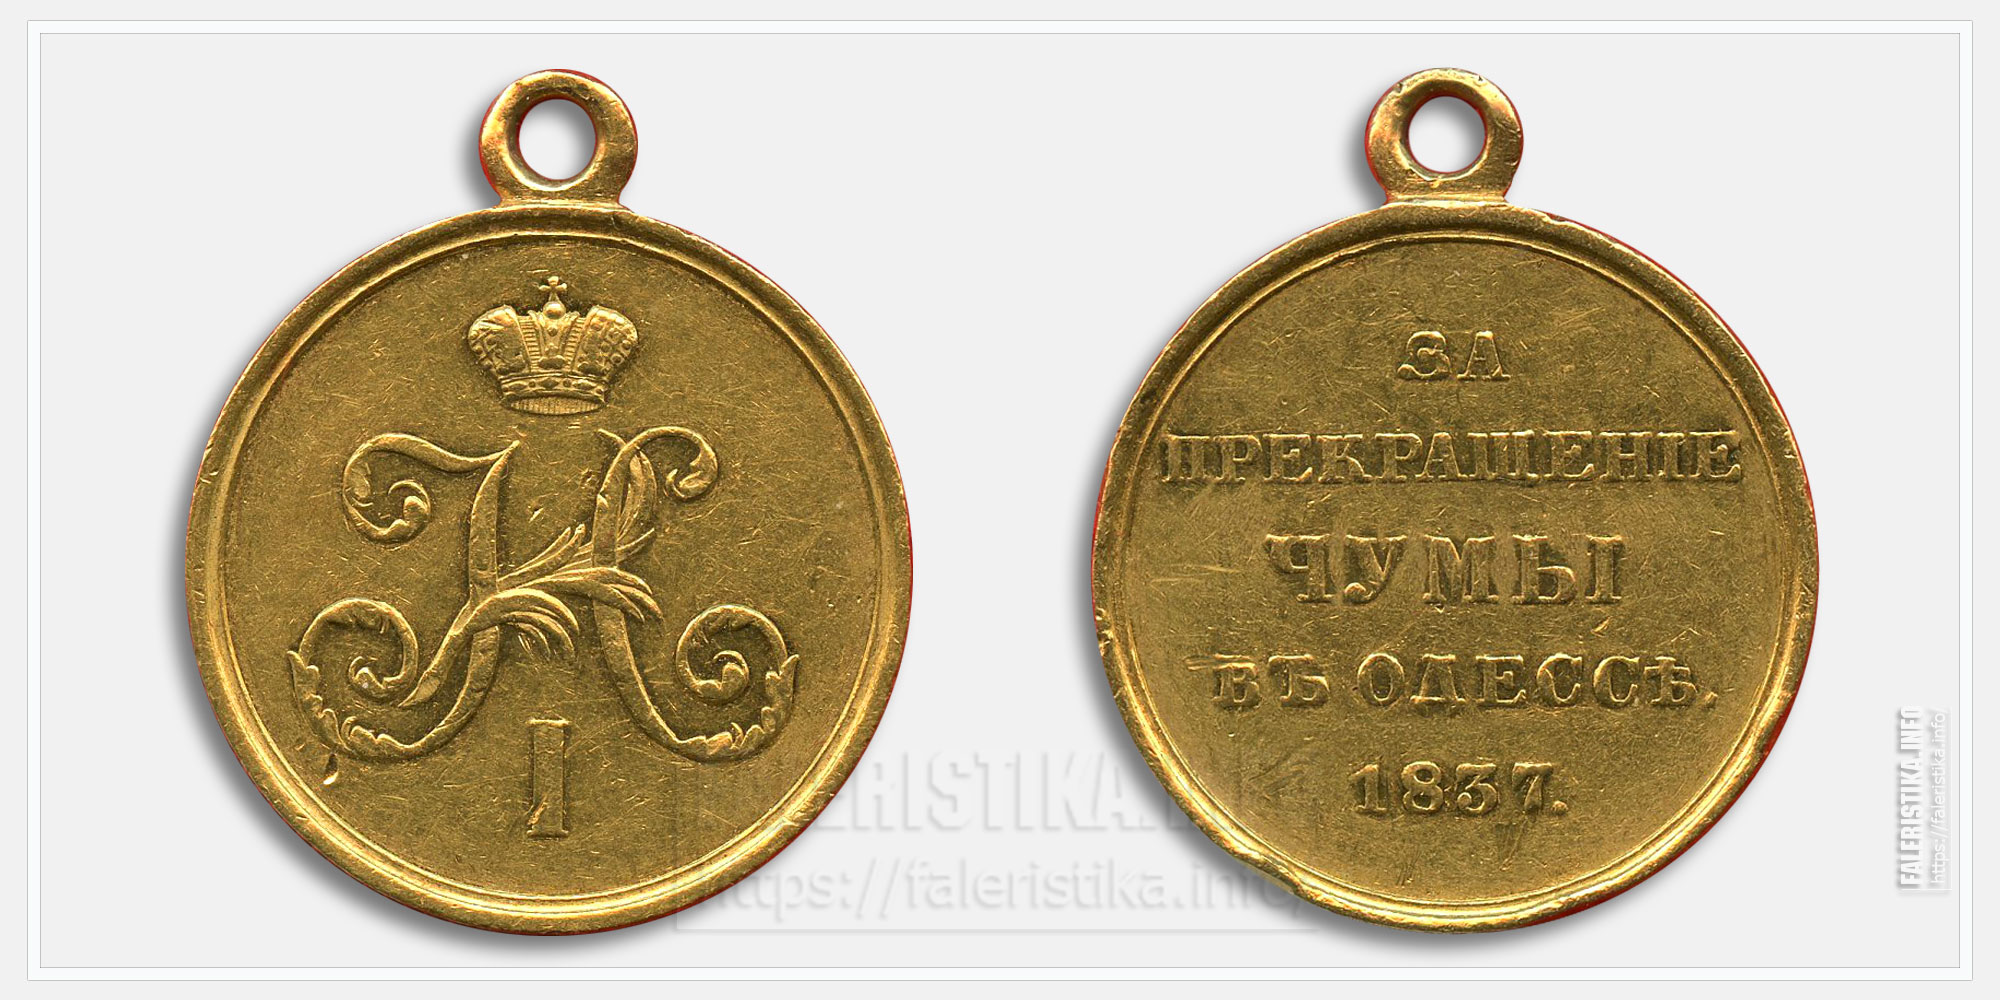 Медаль "За прекращение чумы в Одессе" 1838